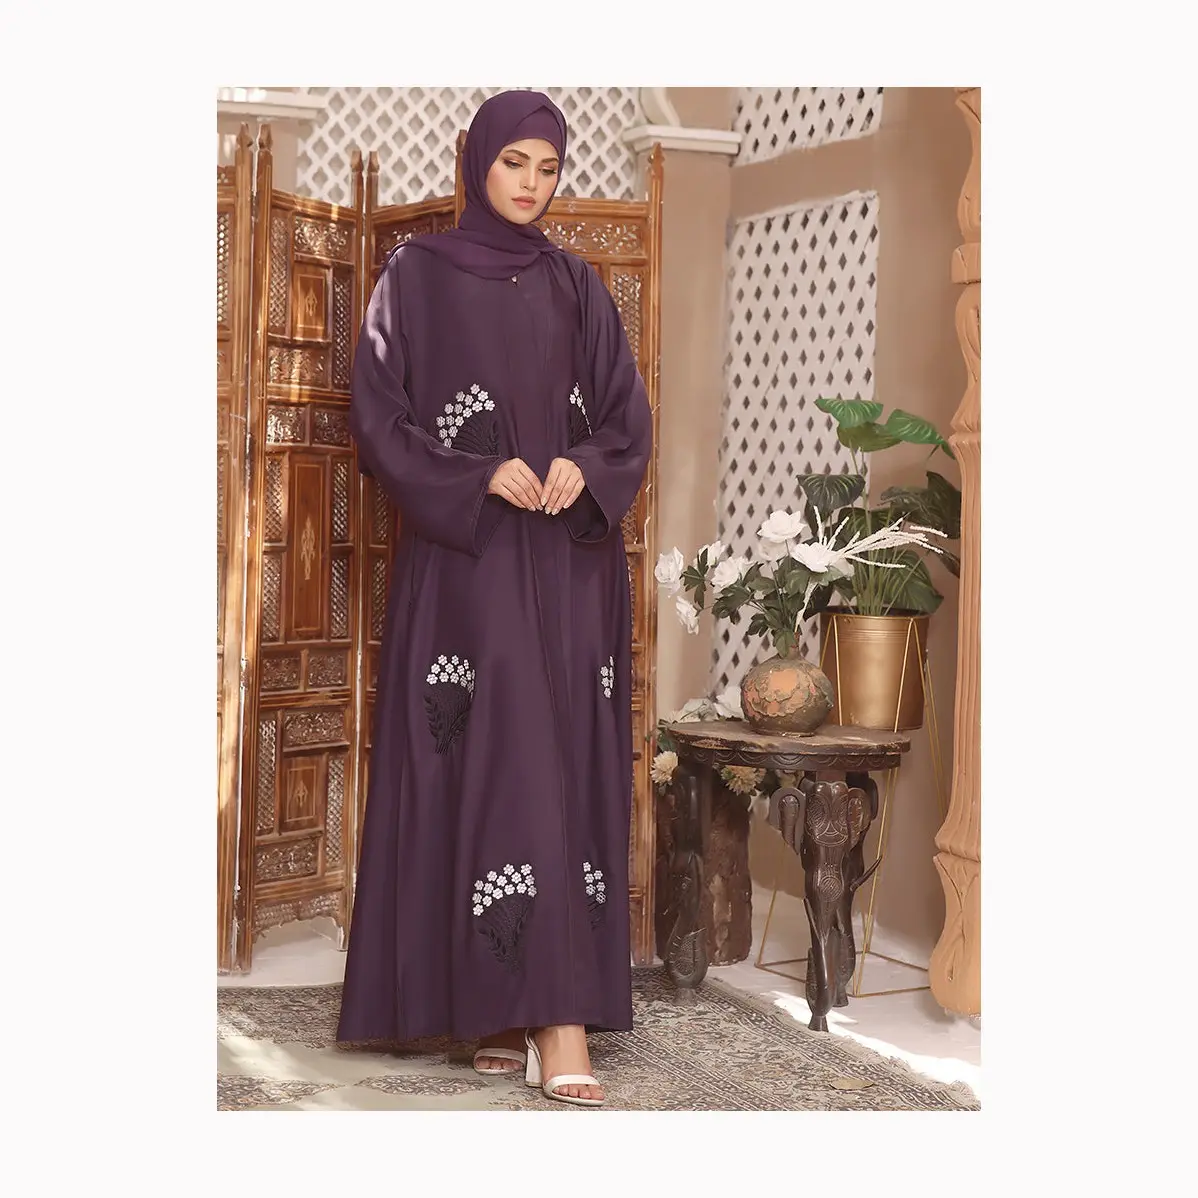 Düz siyah renk moda fantezi Abaya trend yüksek kalite başörtüsü kızlar bayanlar müslüman Kaftan uzun elbise Abayas şık elbiseler